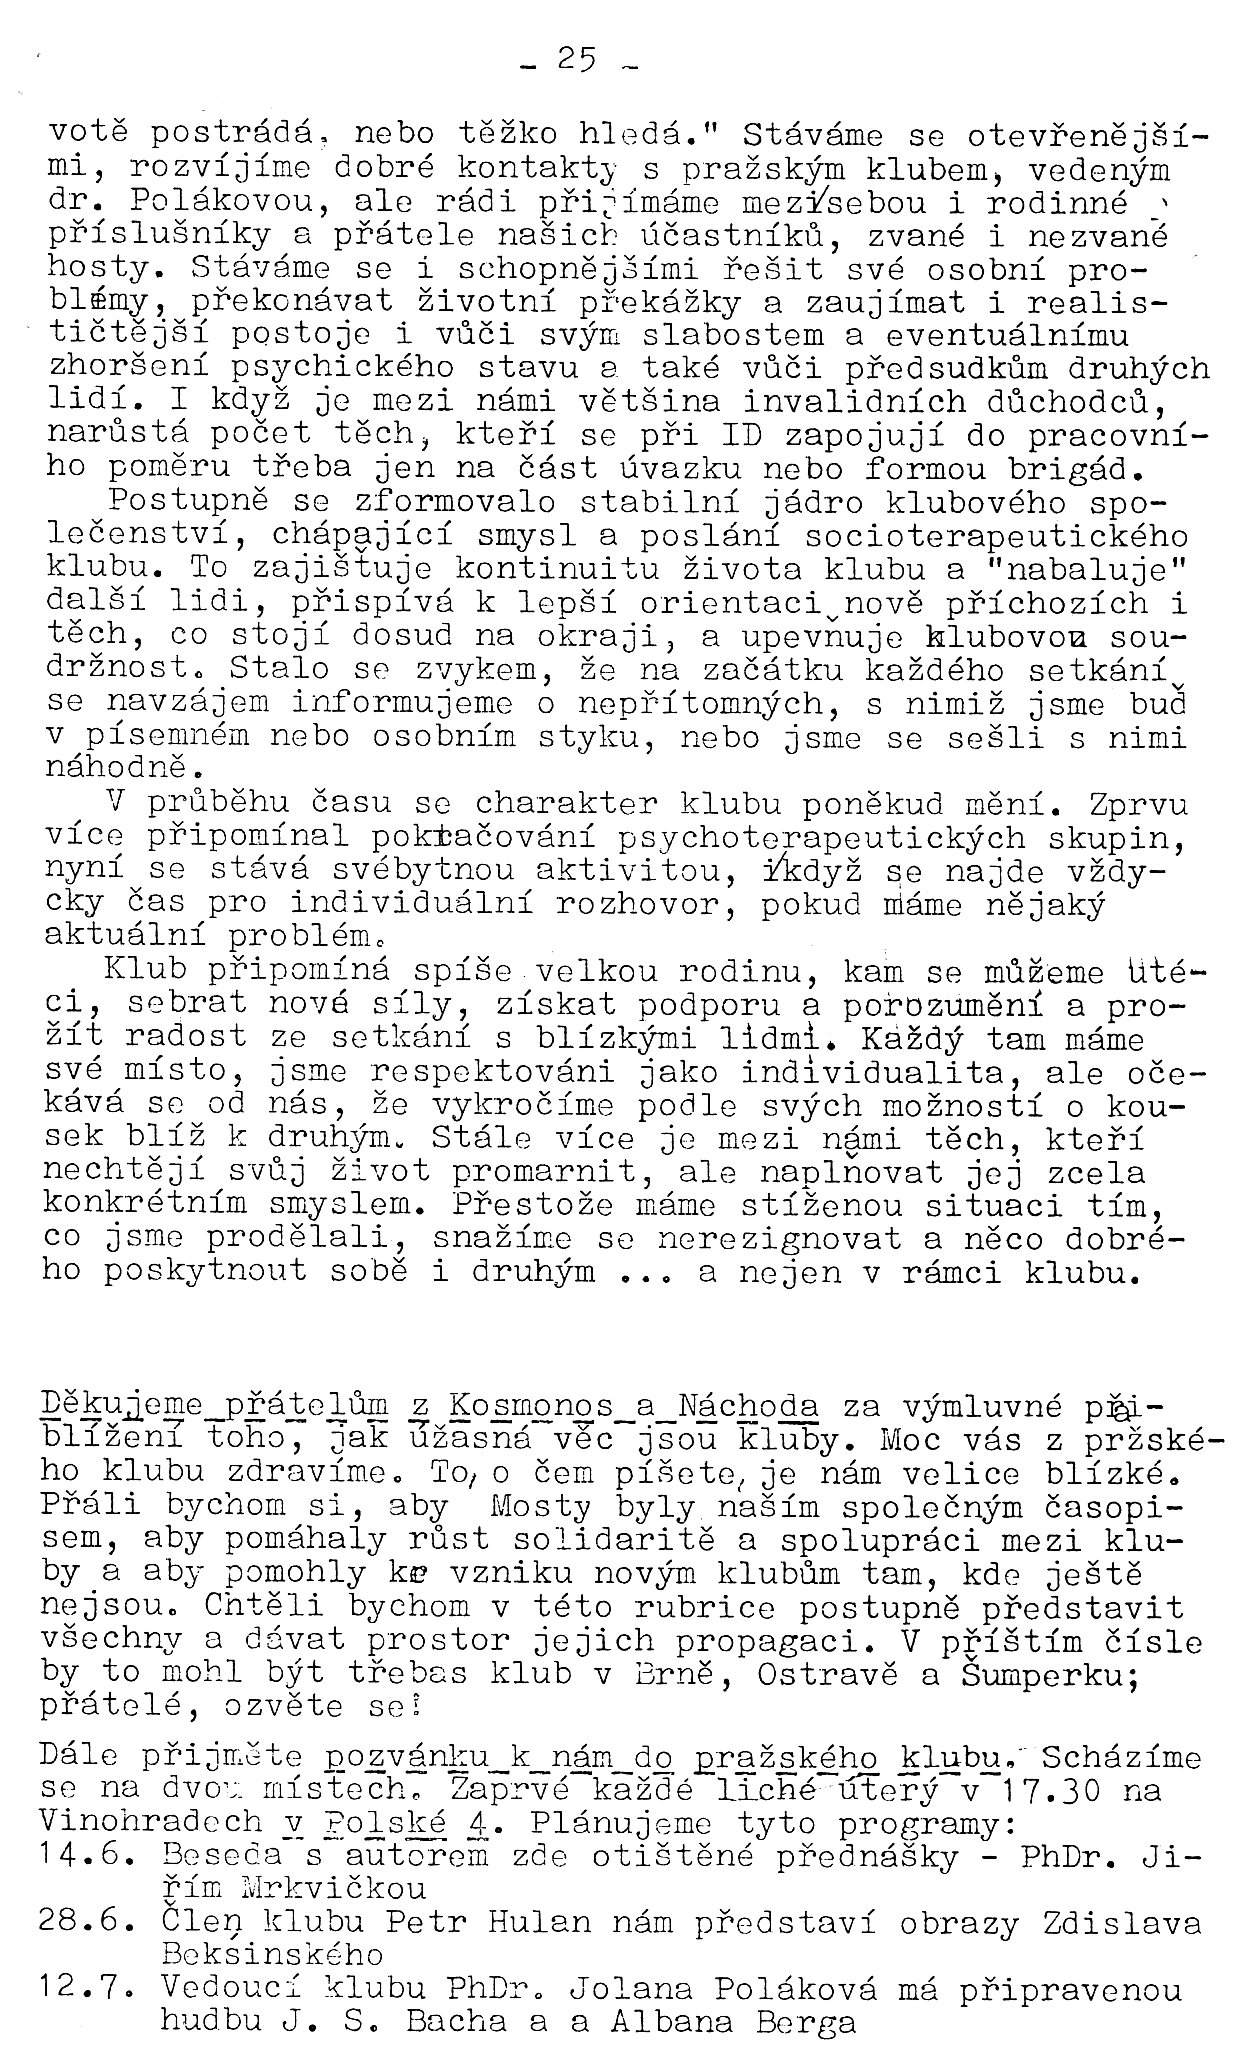 Kluby - strana 25 (asopis Mosty 1988/1)